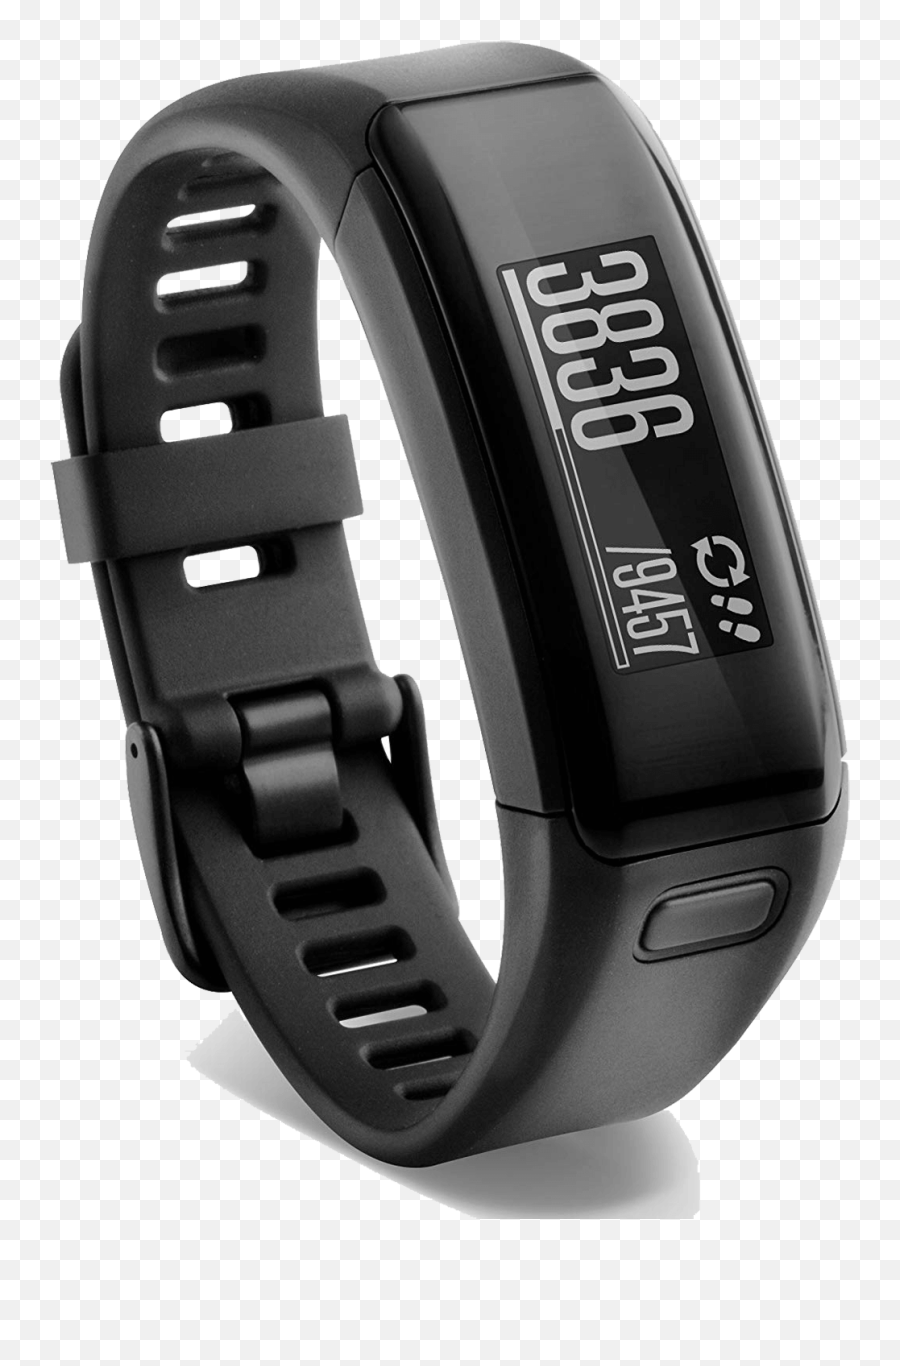 5 Best Smartwatch Under 100 Dollars In October 2021 Emoji,Alcatel One Touch Emotion Sensing Smart Watch